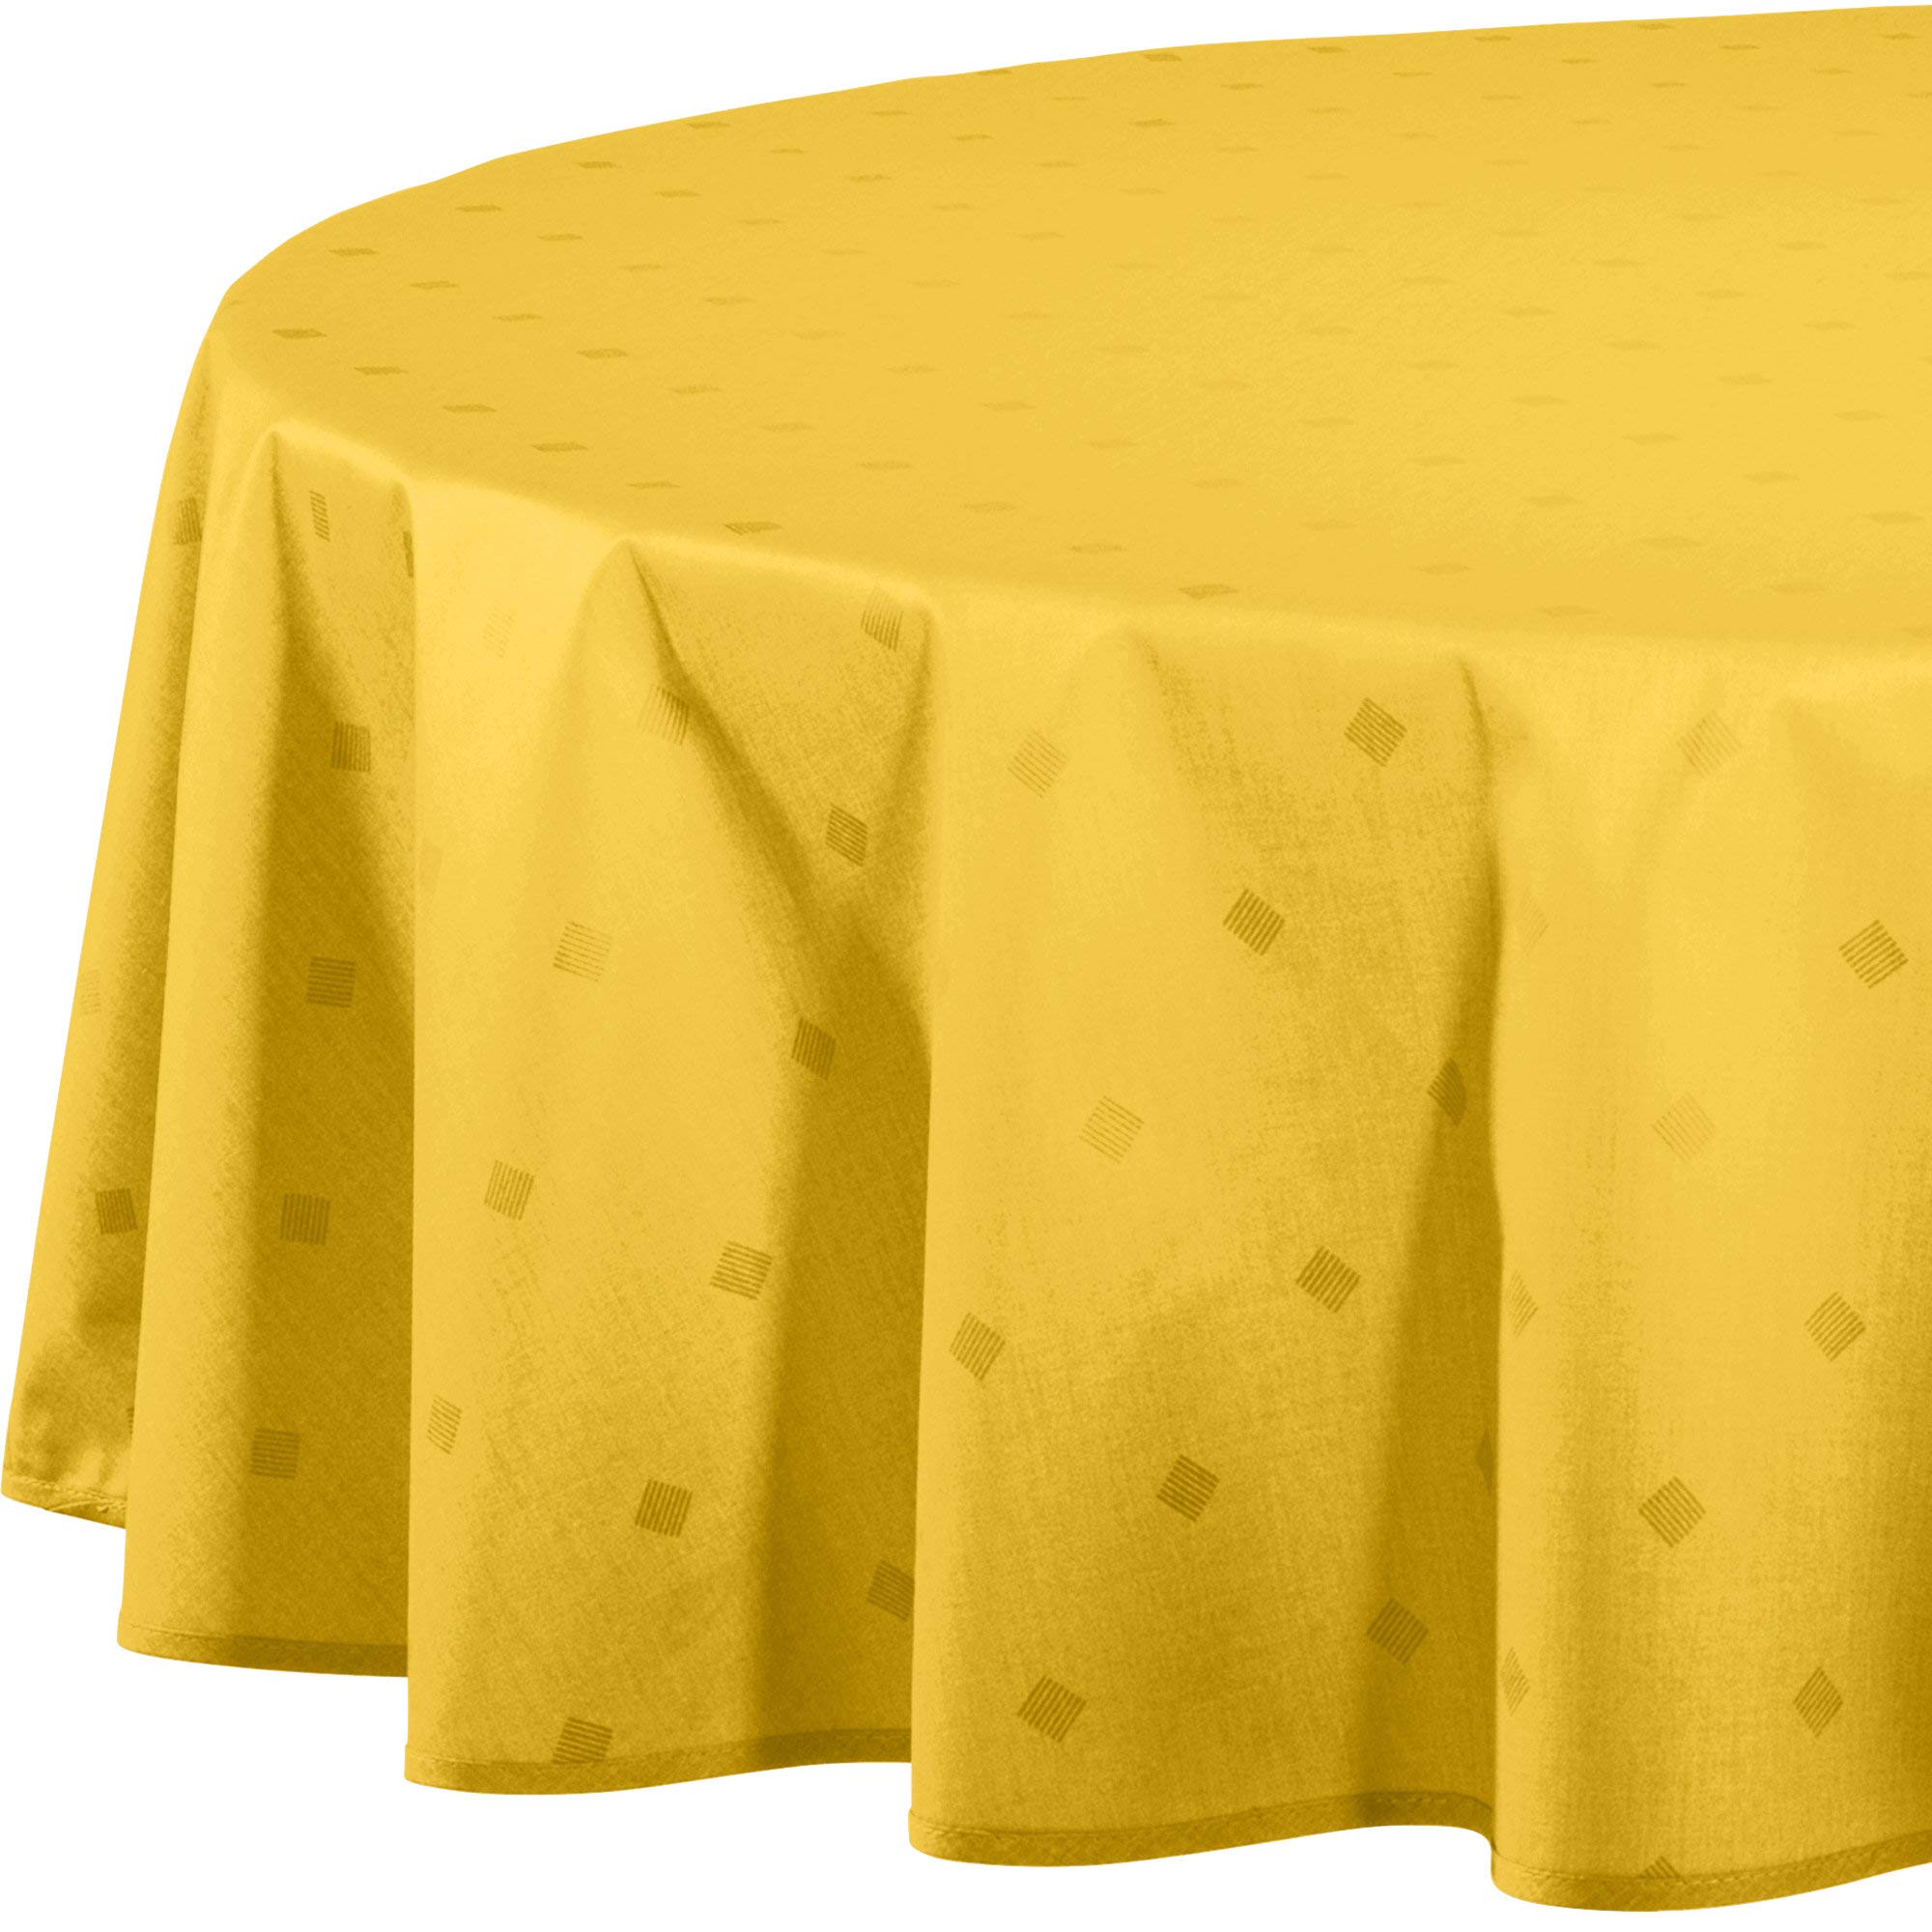 Erwin Müller abwaschbare Tischdecke, Tischwäsche Neuss im Rautendesign, gelb Größe 160x220 cm - acrylversiegeltes Gewebe für leichtes Wischen (weitere Farben, Größen)